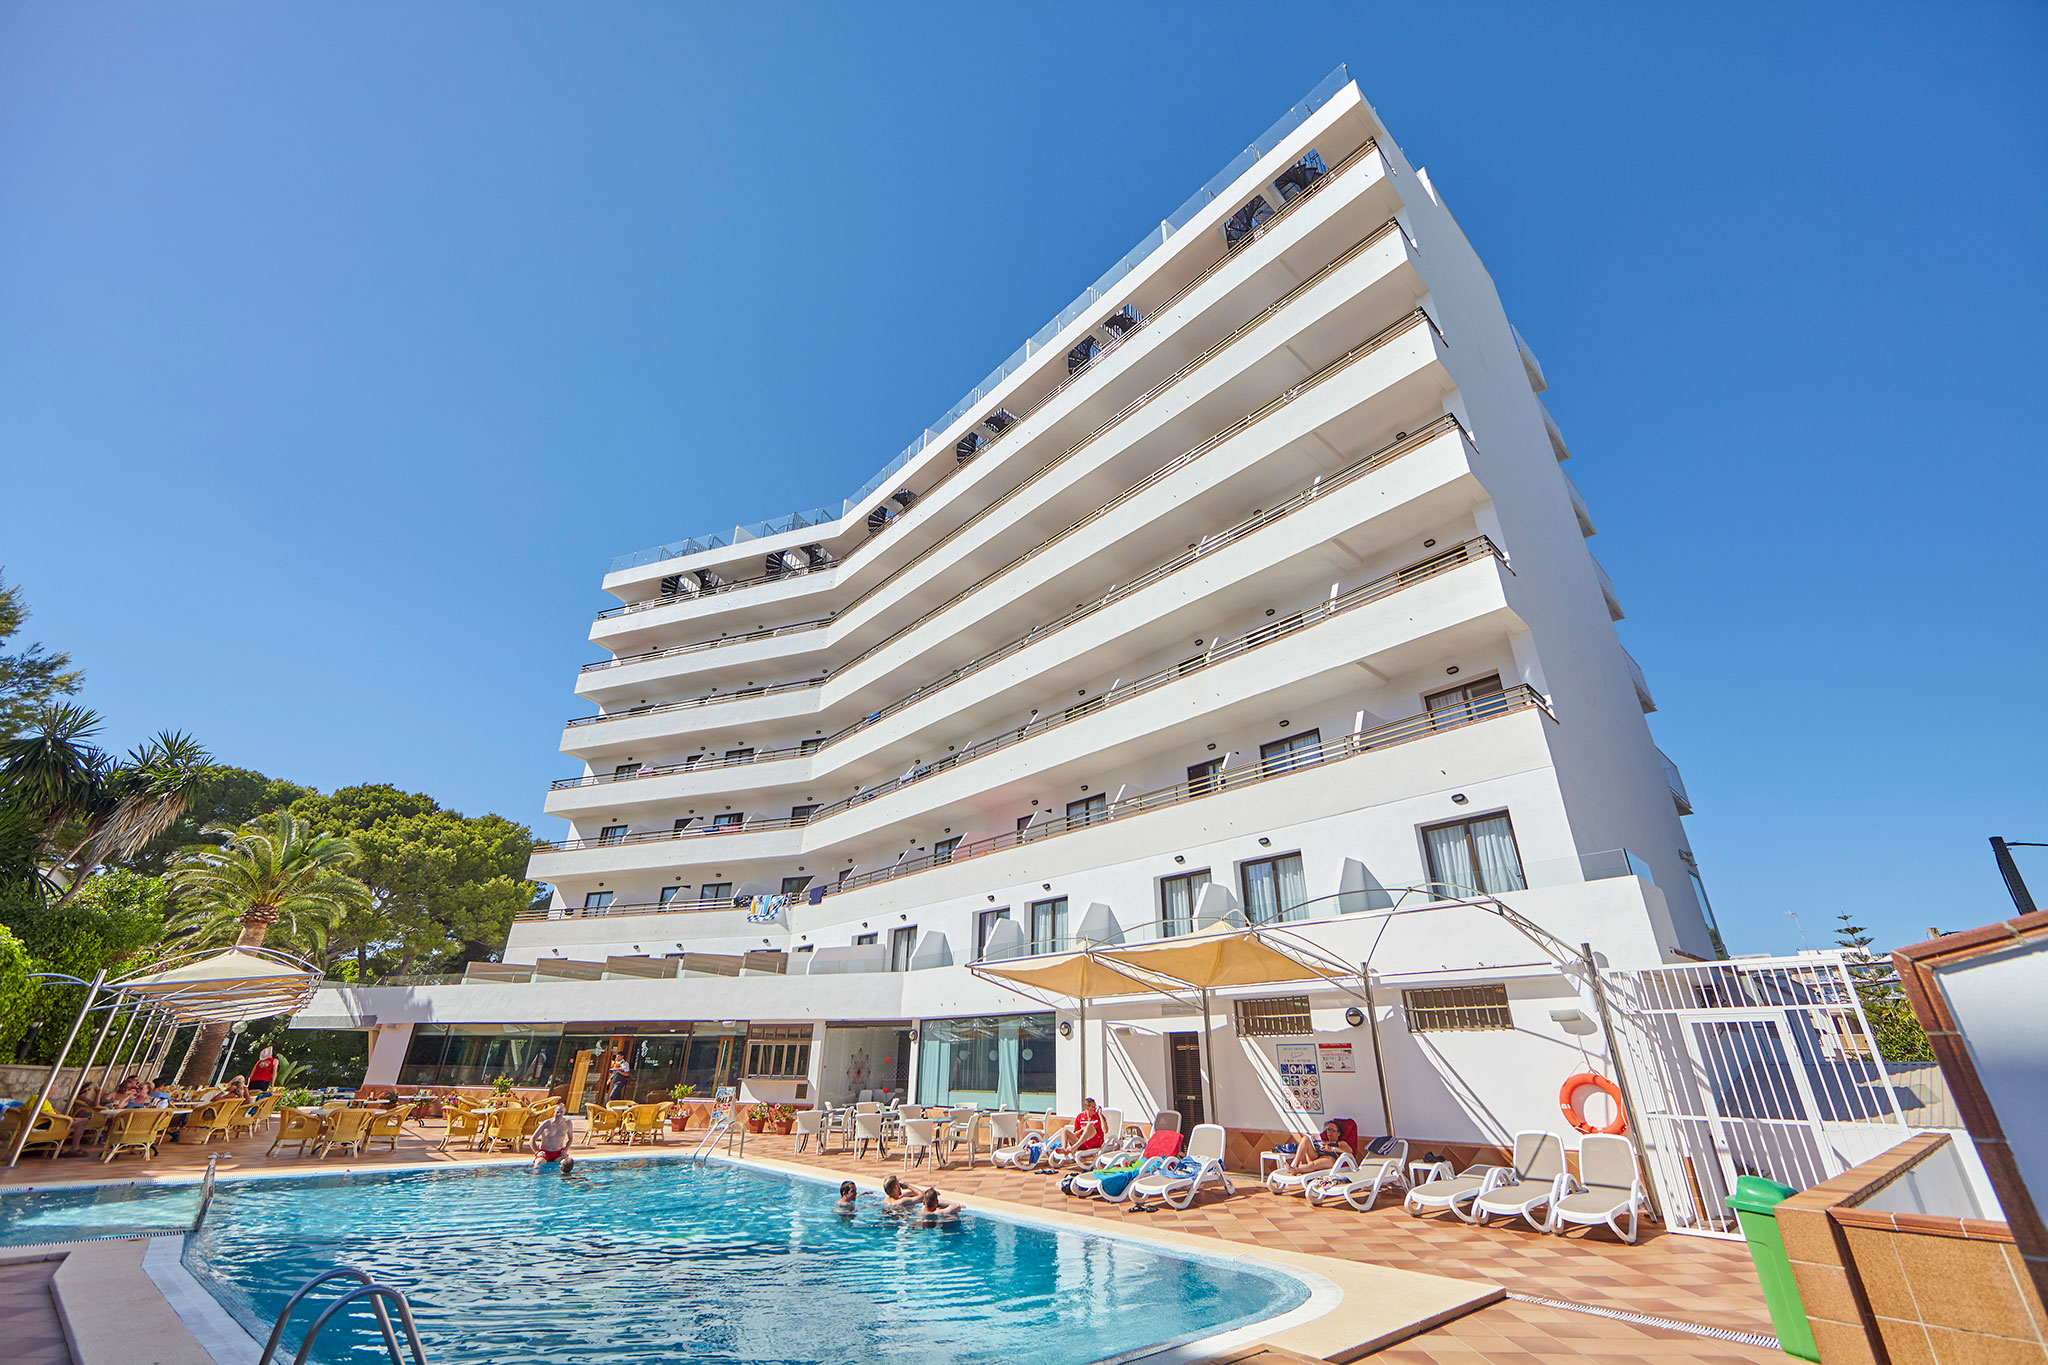 servicios Hotel Principe en Playa de Palma